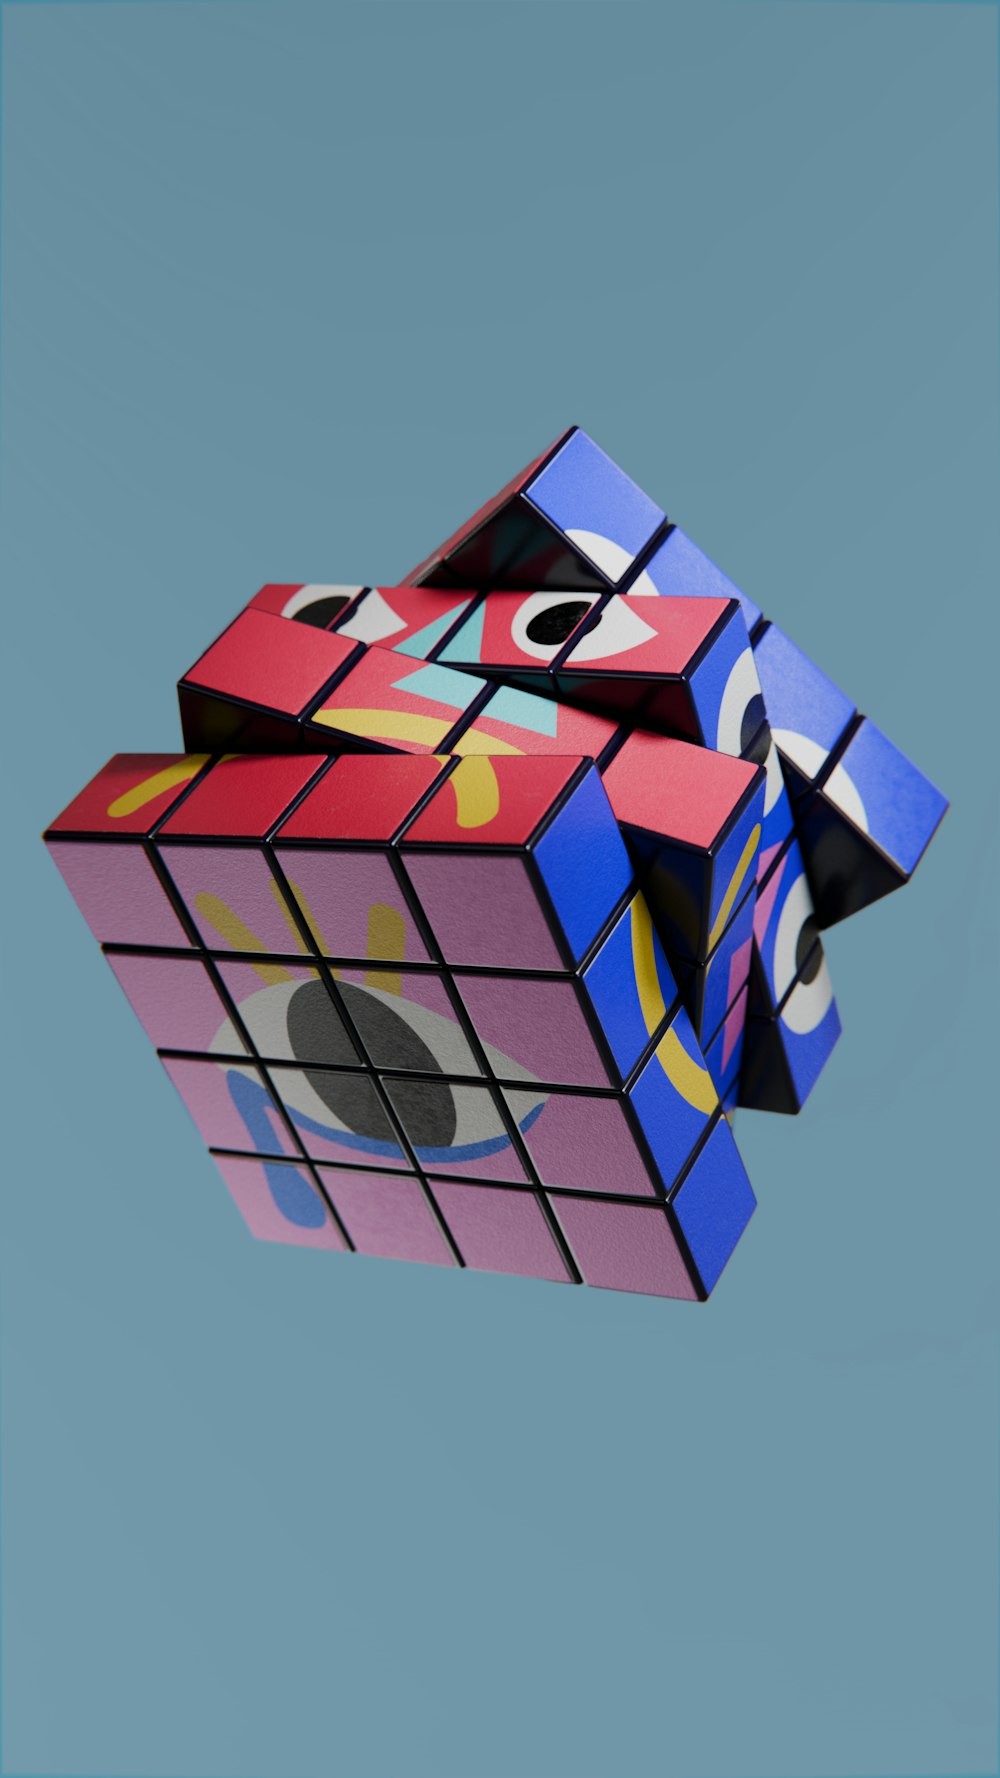 Un cubo de Rubik volando en el cielo